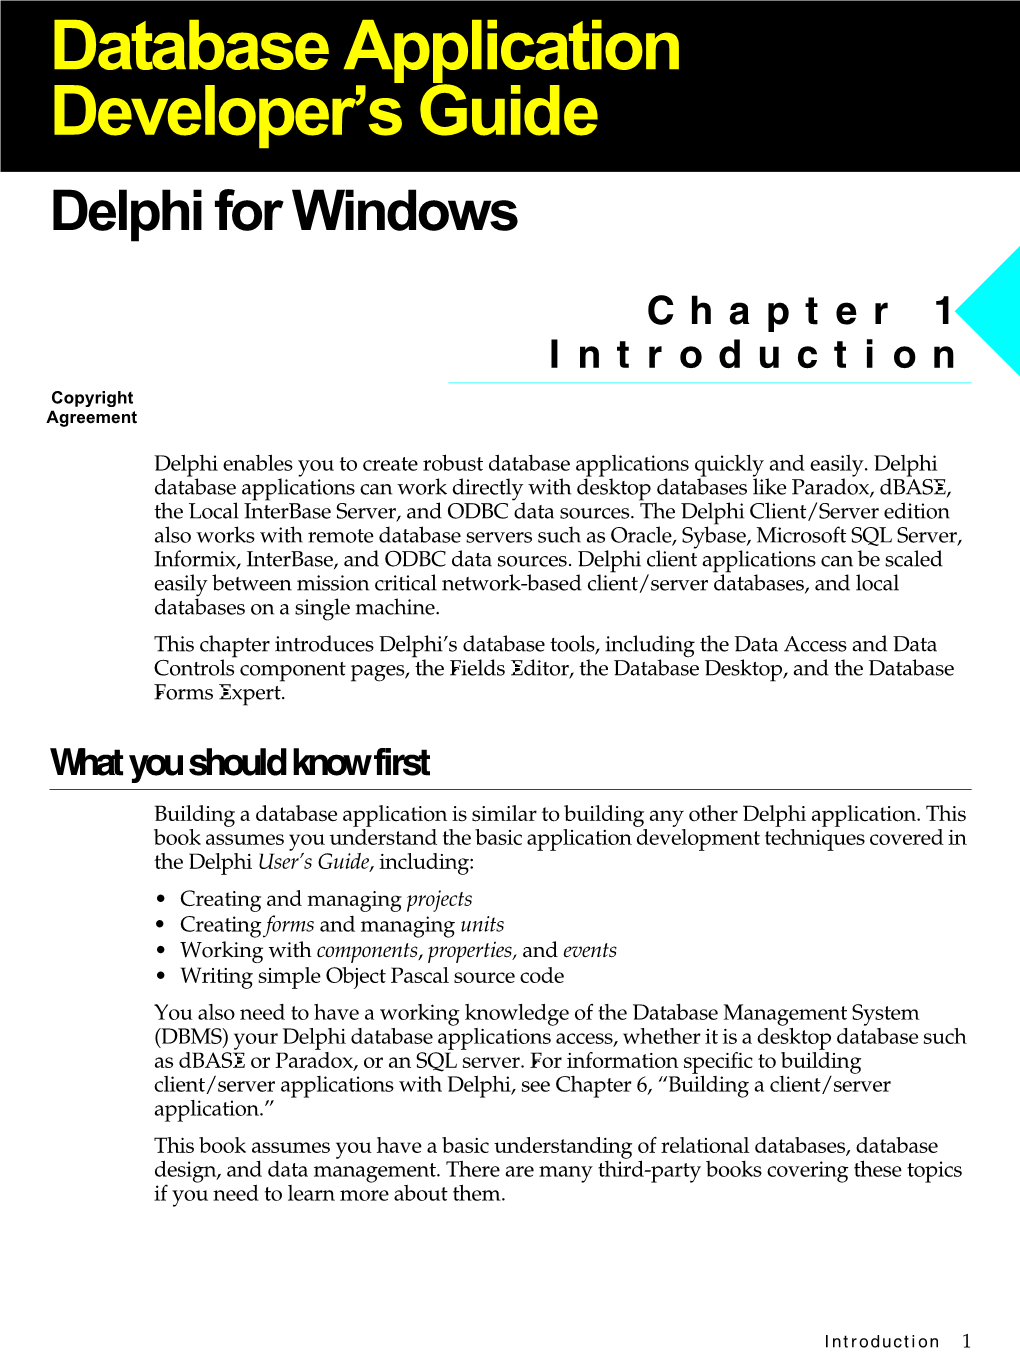 Delphi Database Application Developer's Guide